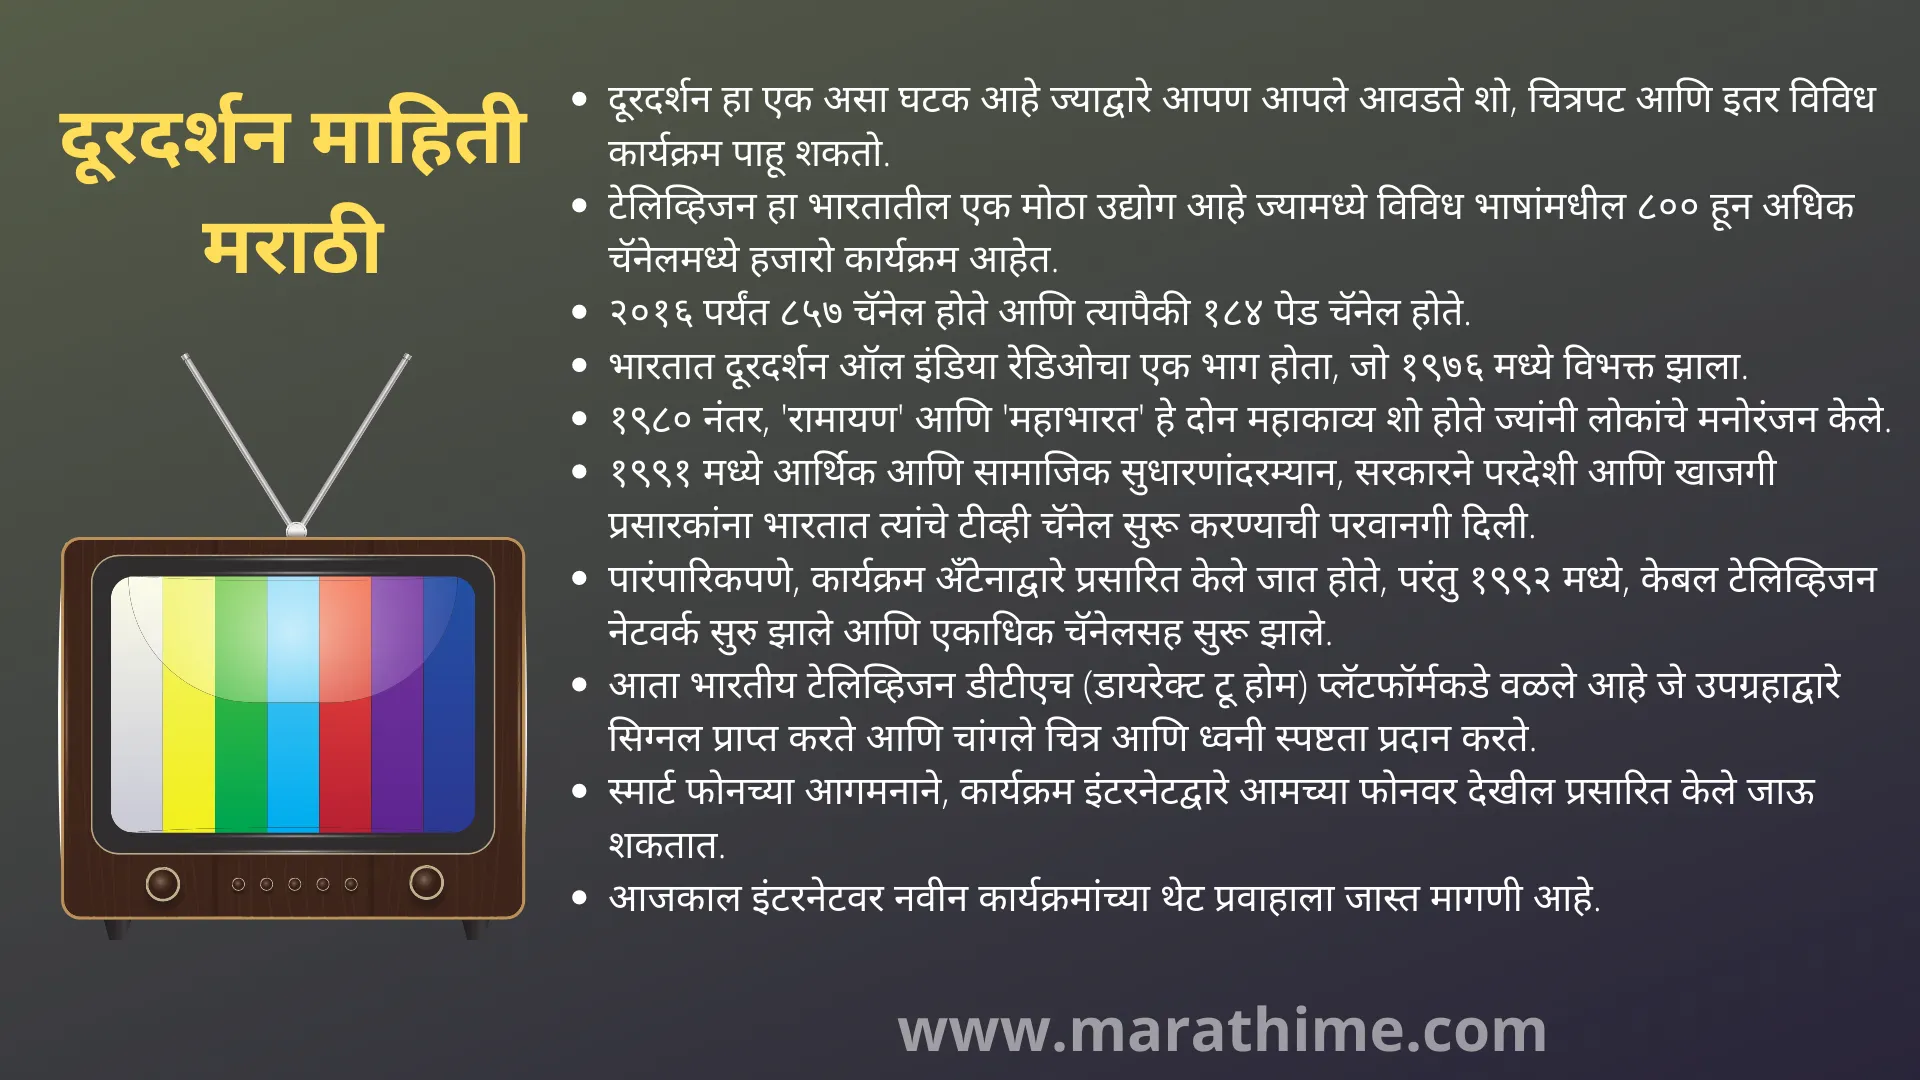 दूरदर्शन माहिती मराठी-दूरदर्शन निबंध मराठी 10 ओळी-10 Lines on Television in Marathi